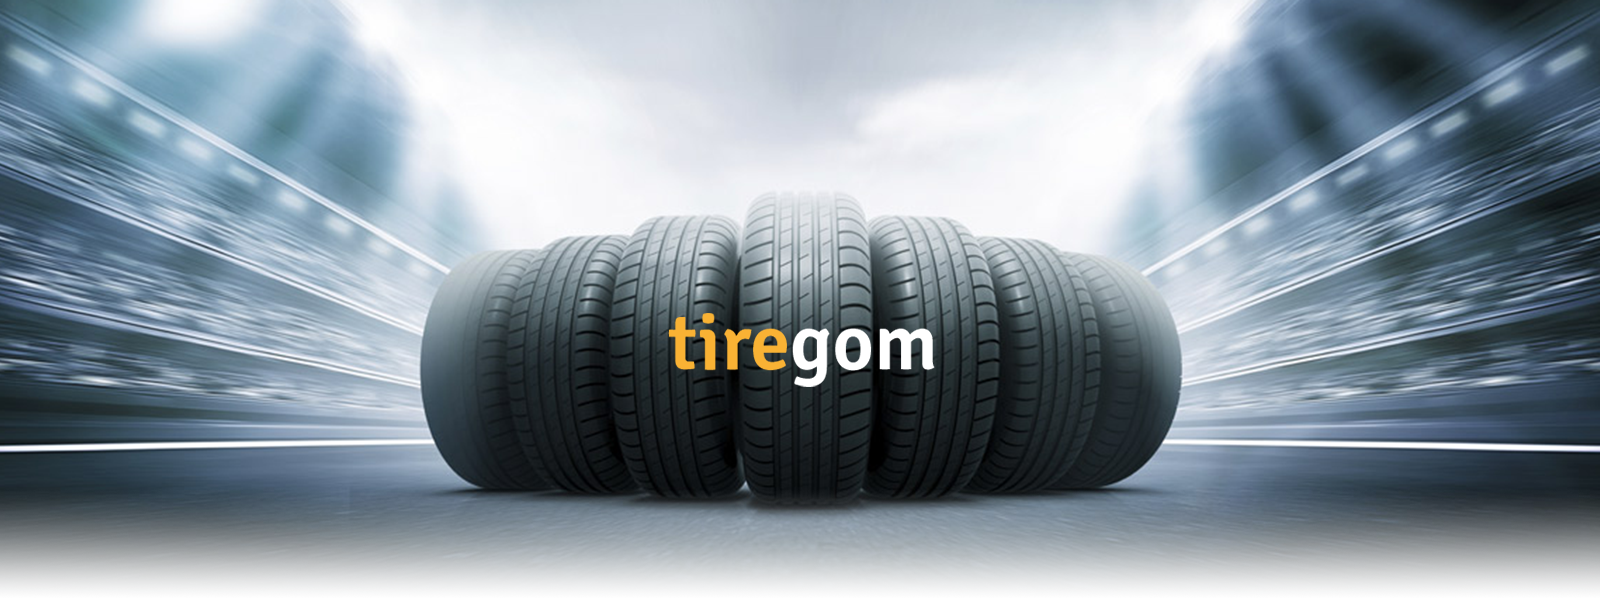 Tiregom.ru : сравнение шин